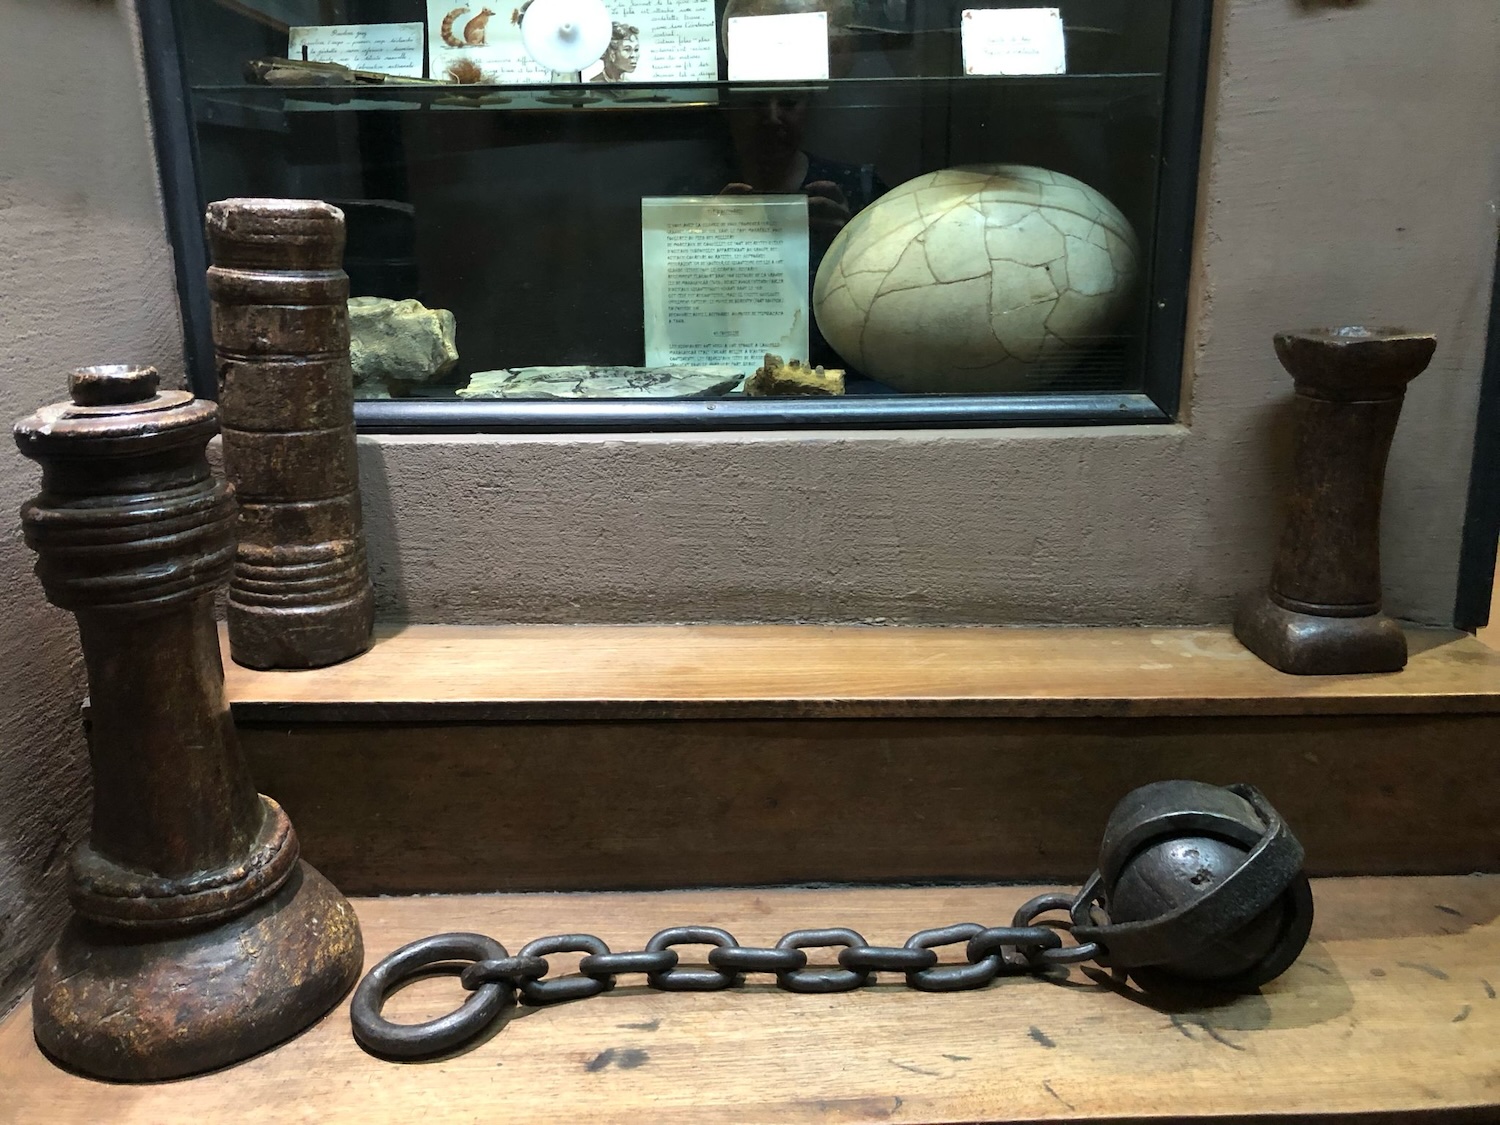 Dans ce groupe d’objets, des chaînes utilisées pour attacher les prisonniers pendant l’époque coloniale © Globe Reporters